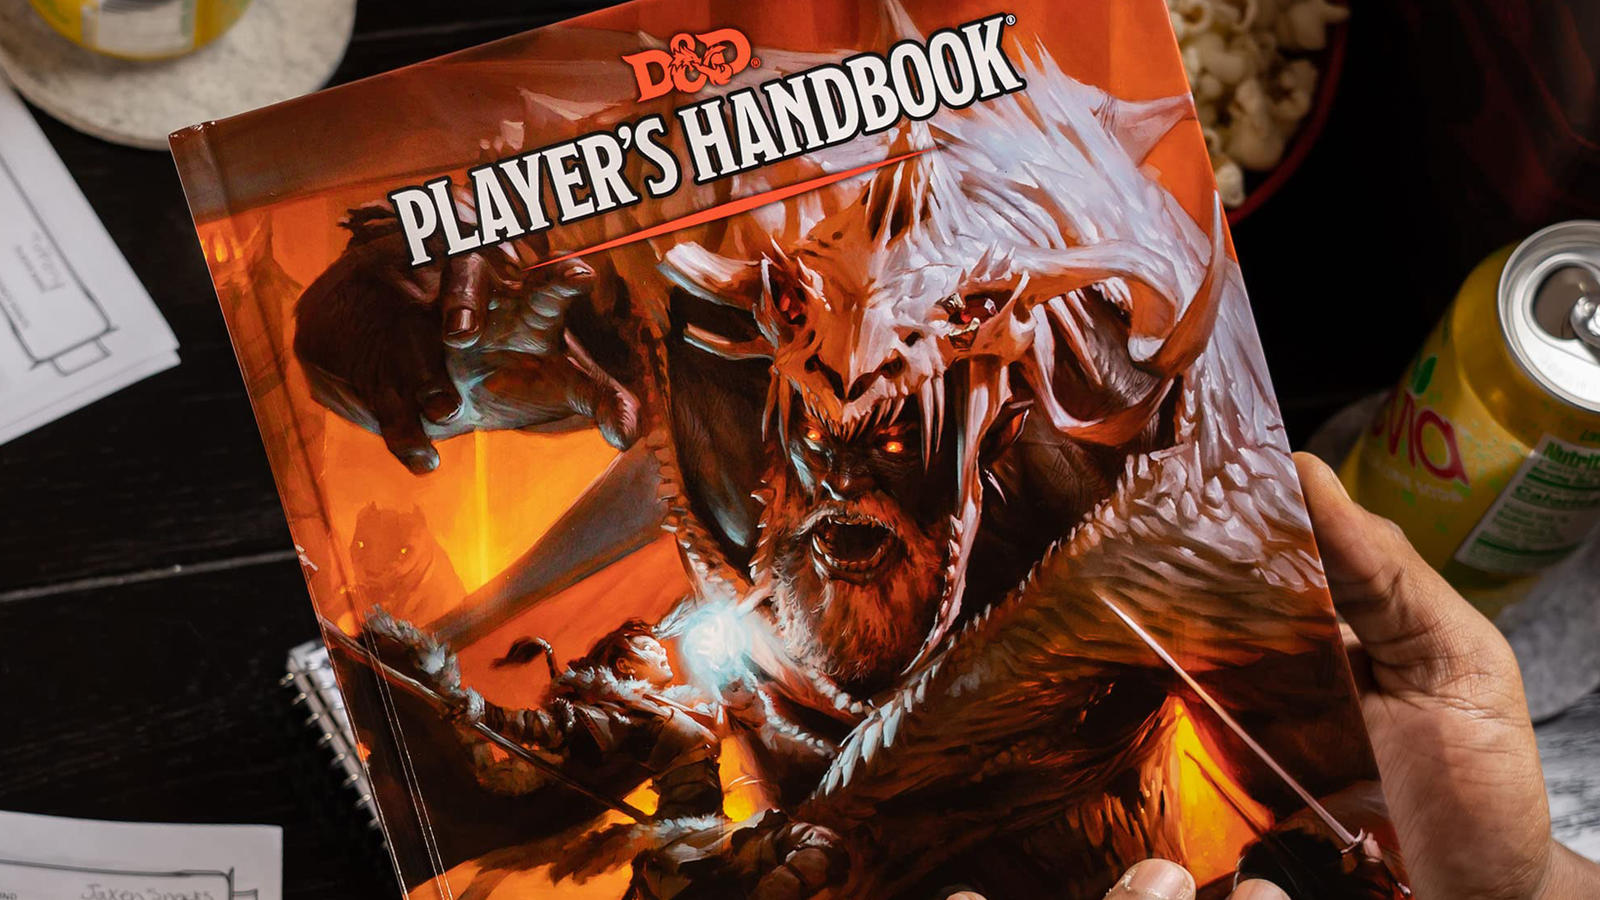 Play Dungeons & Dragons 5e Online, D&D 5e